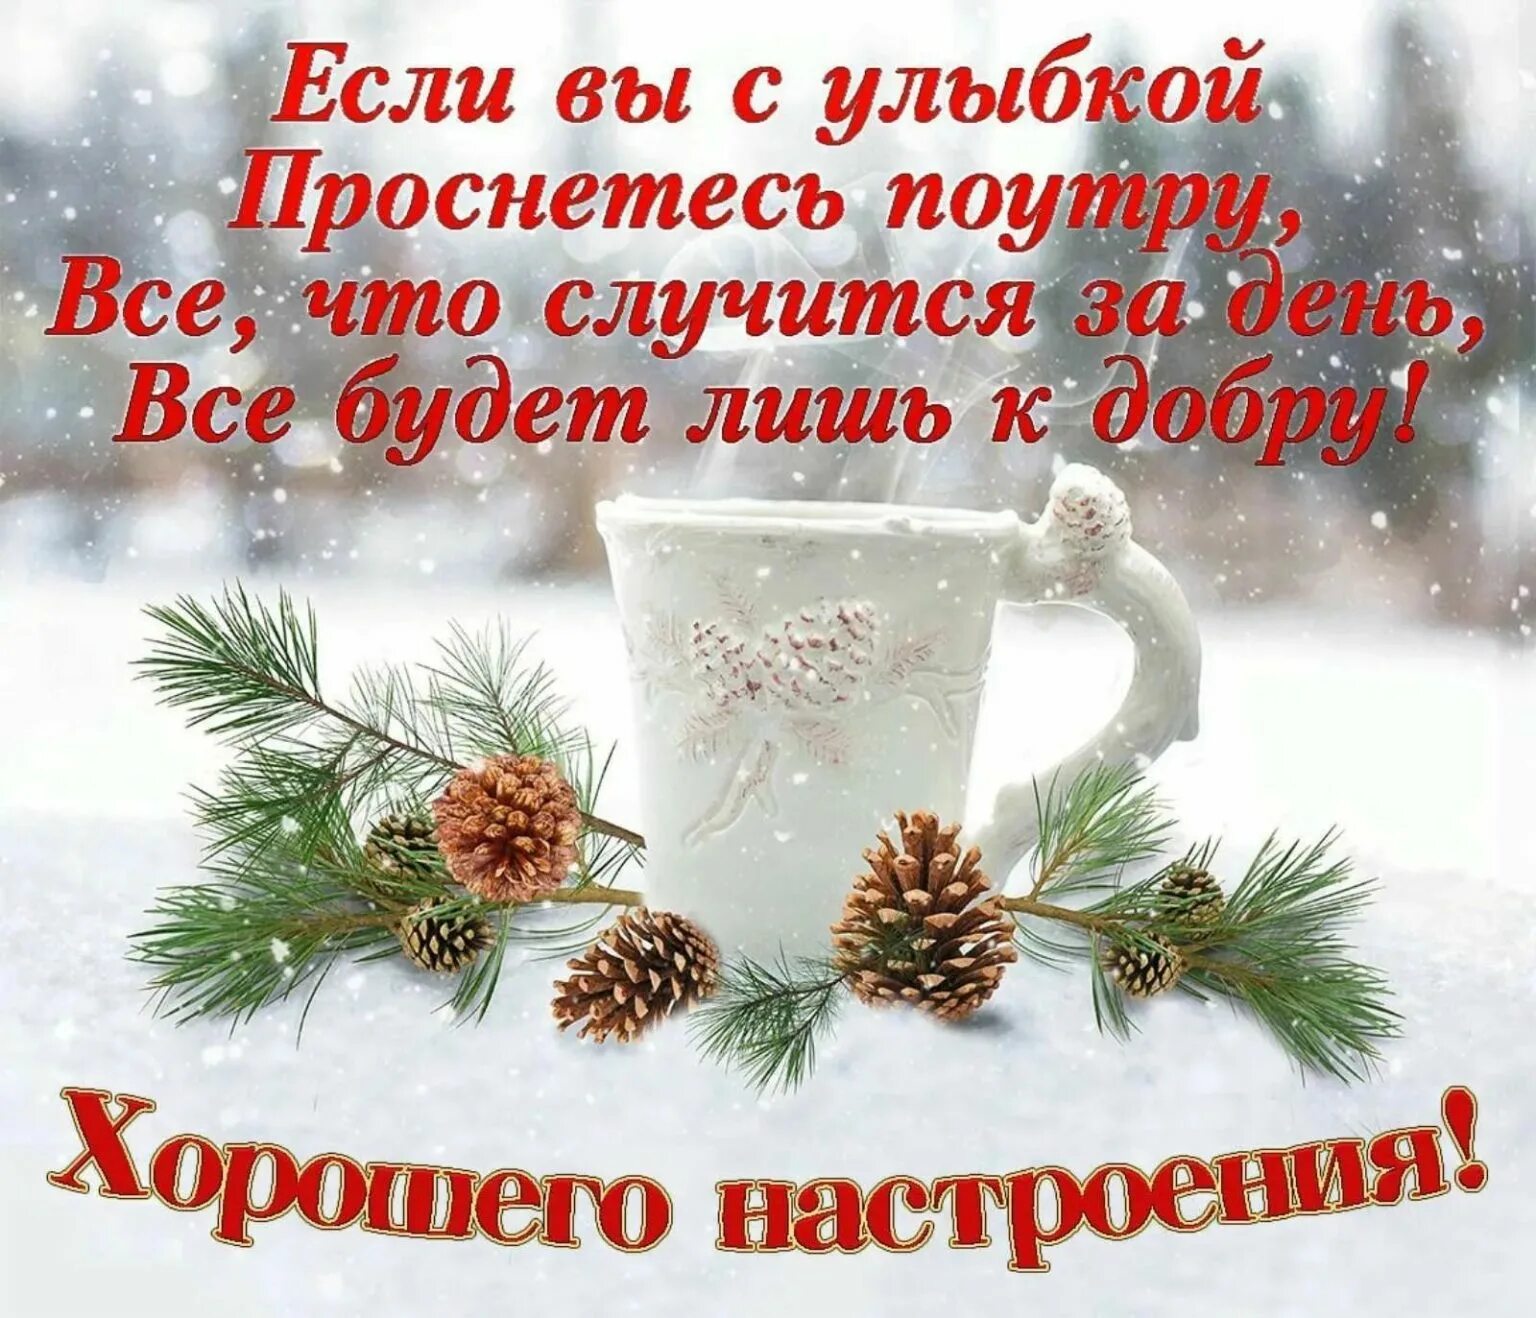 Зимние открытки с добрым утром и хорошим. Зимние поздравления с добрым утром. Красивое поздравление с зимним утром. Доброго зимнего утра и хорошего дня. Пожелания доброго зимнего утра.